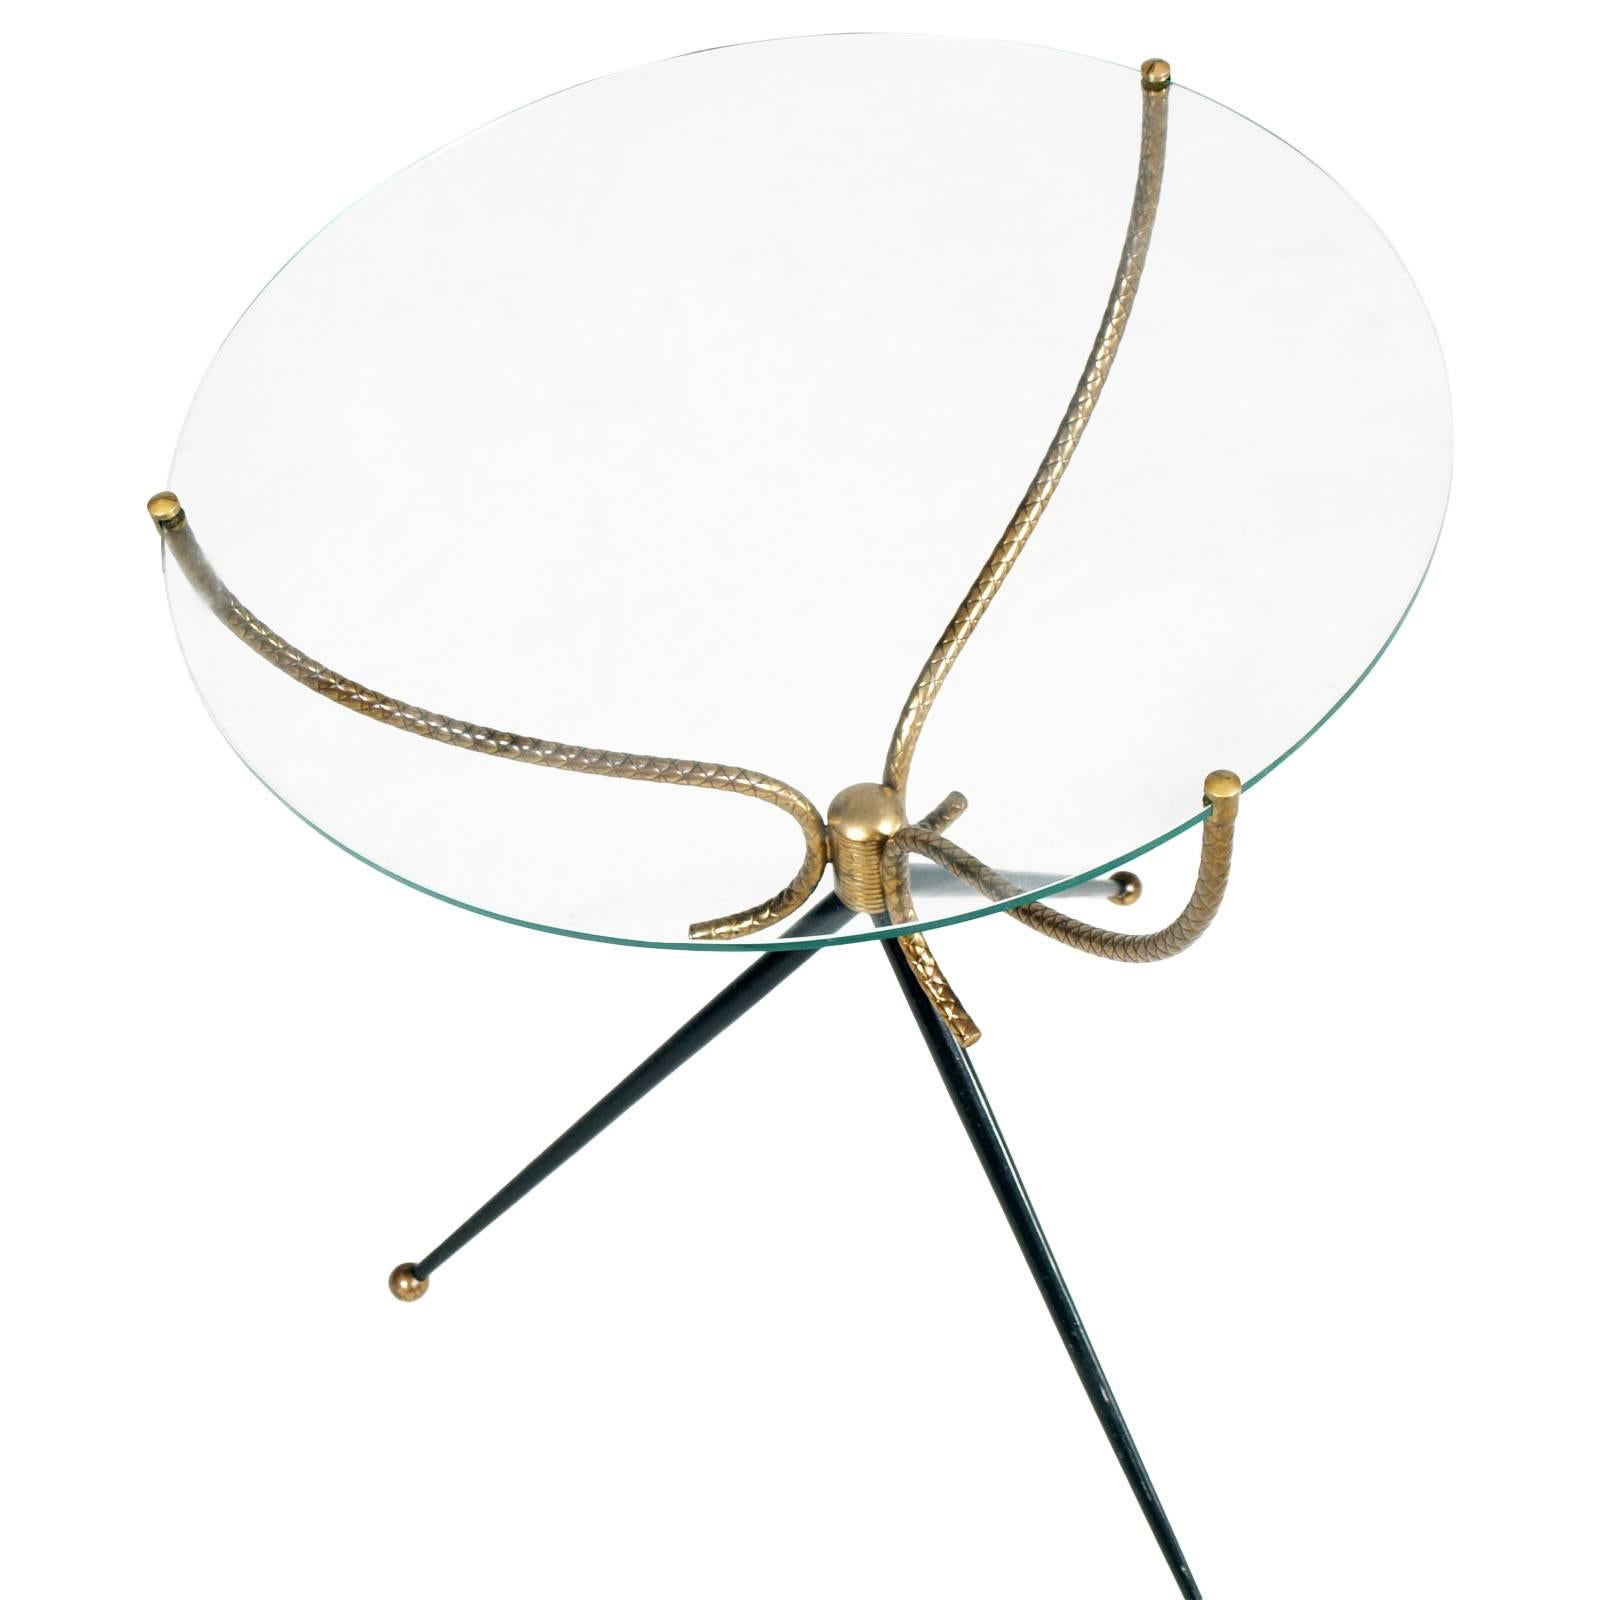 Très rare table basse tripode italienne des années 1930 de style Gio Ponti, laiton doré et laqué, plateau en cristal
Dimensions en cm : hauteur 53, diamètre 43.